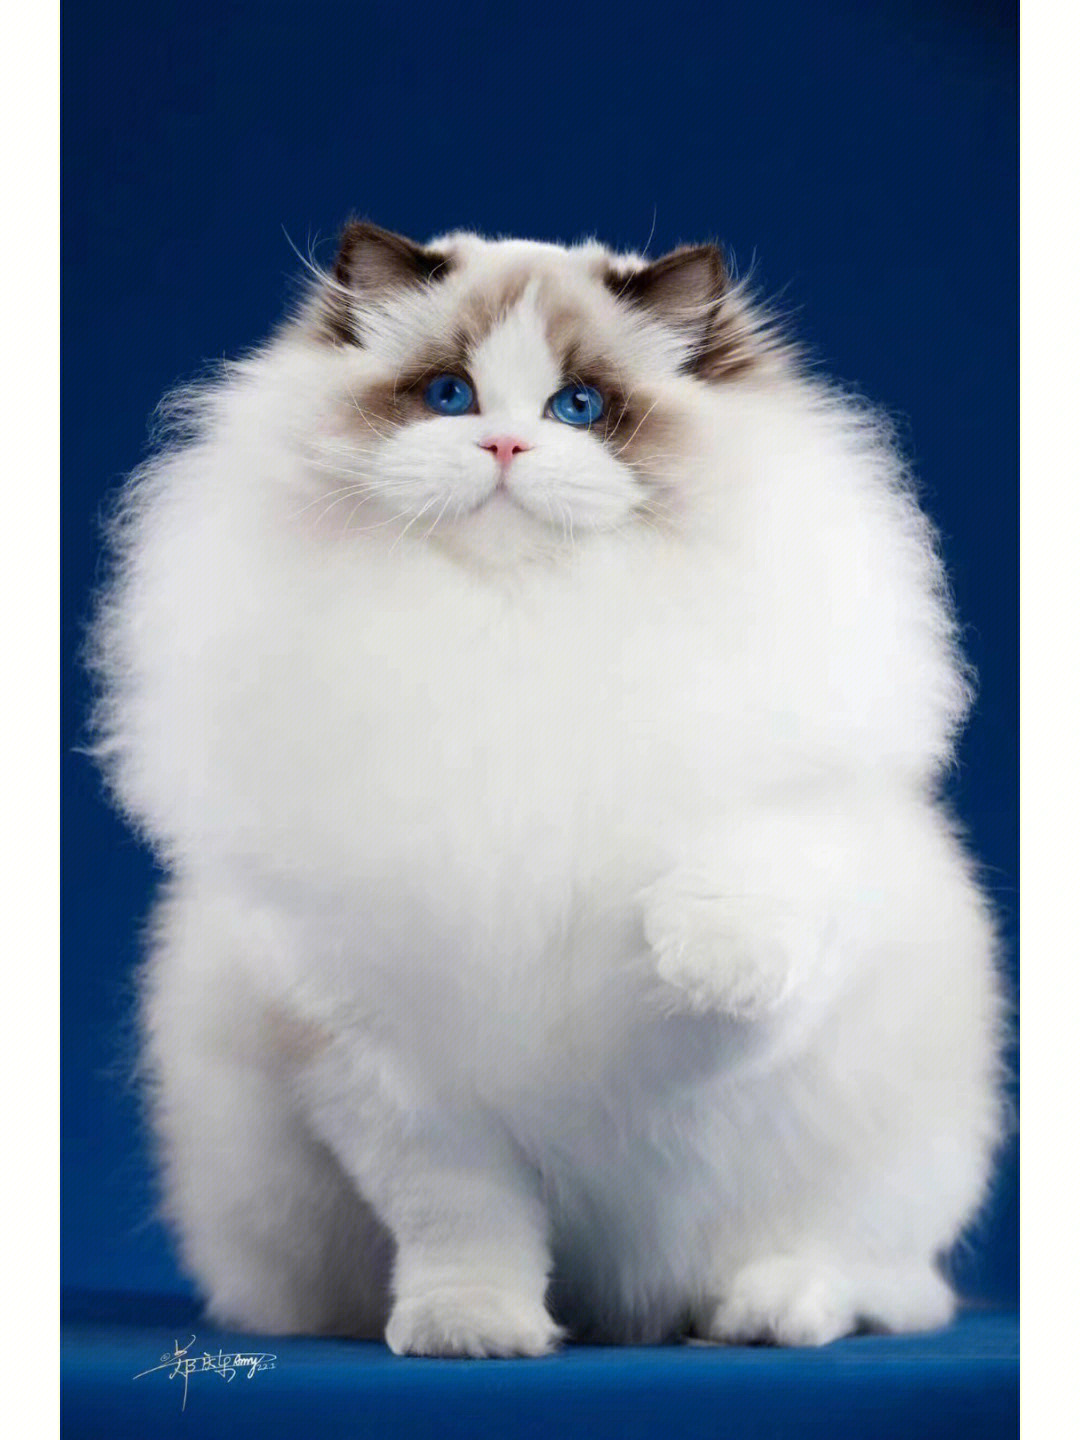 布偶猫照片手机桌面图片